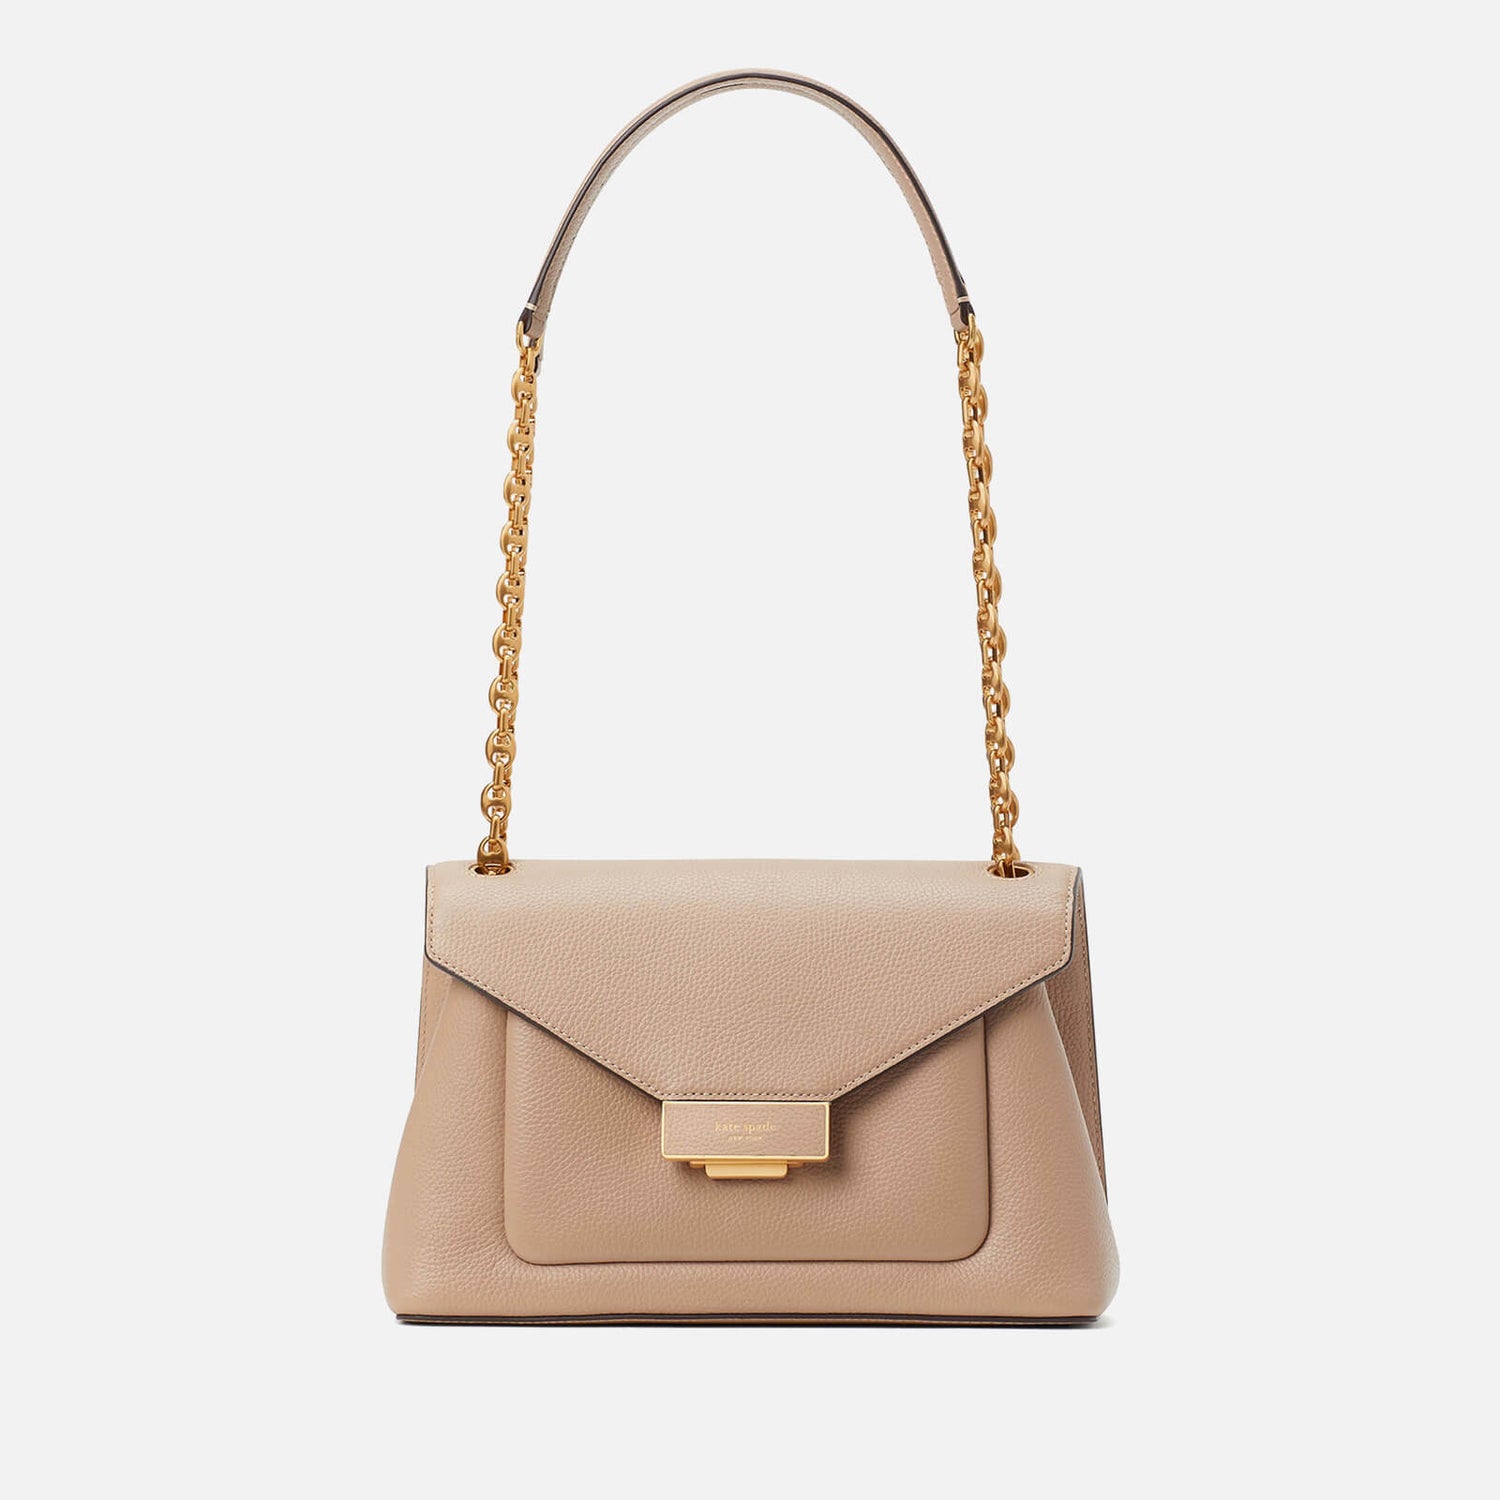 Kate Spade New York Gramercy Pebbled Leather Shoulder Bag